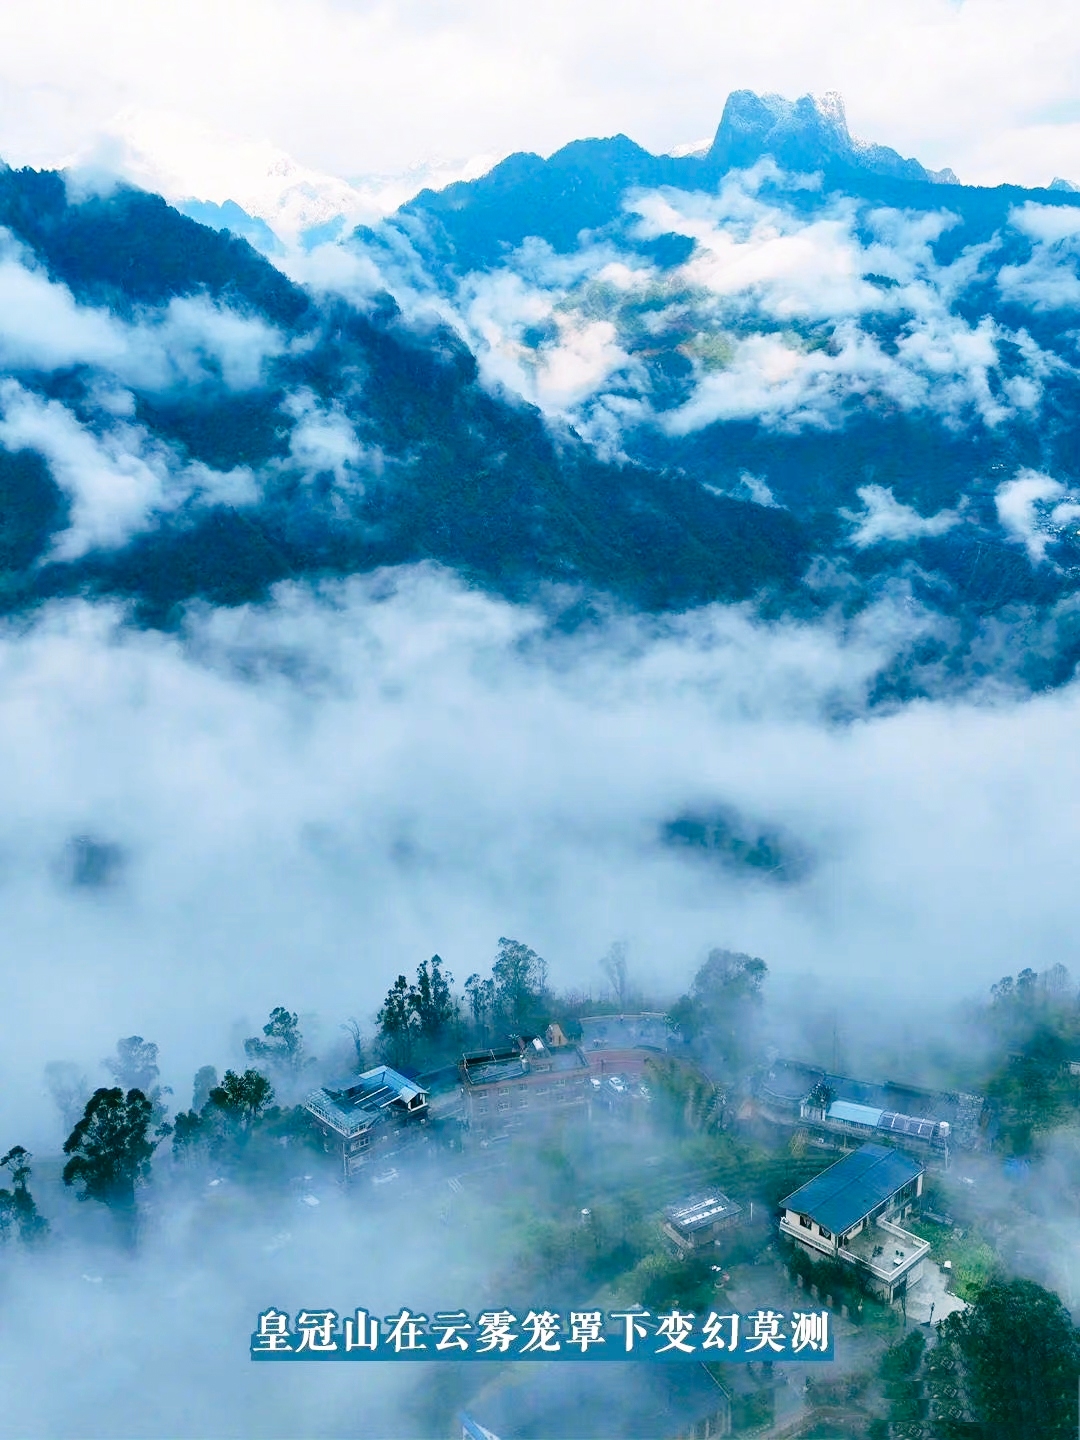 【老姆登村：云端上的村庄】老姆登，怒族语意为“人喜欢来的地方”，村庄坐落在怒江大峡谷海拔1800米的